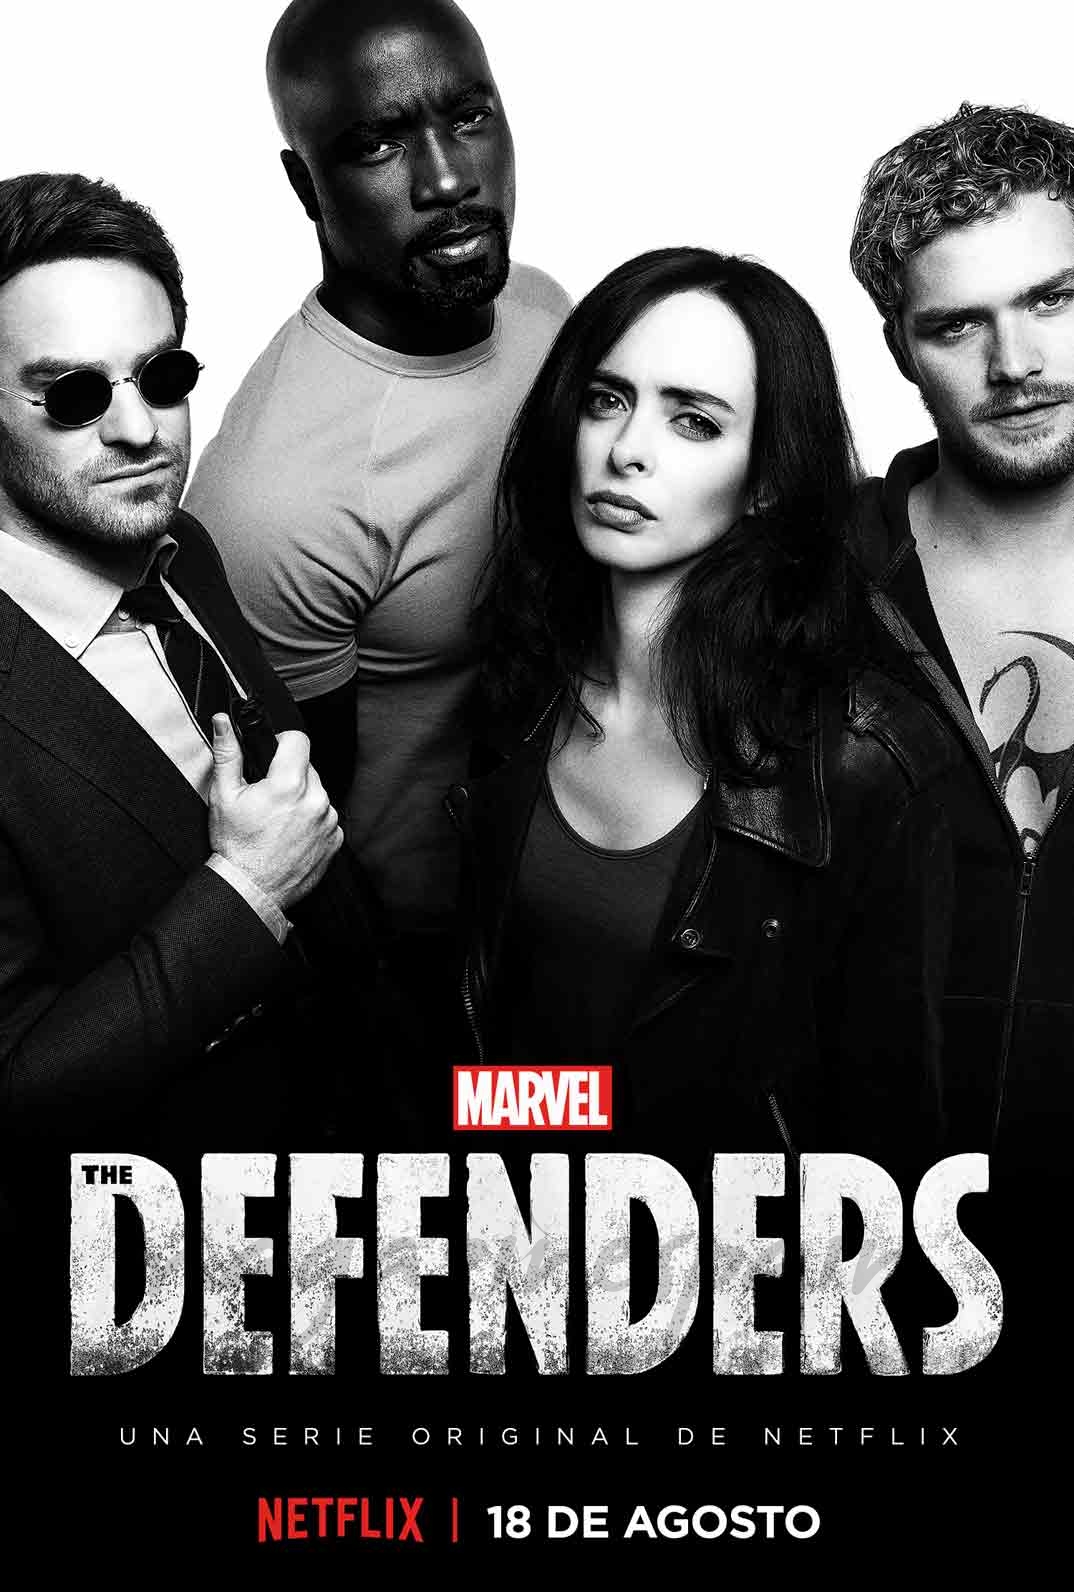 The Defenders © Netflix